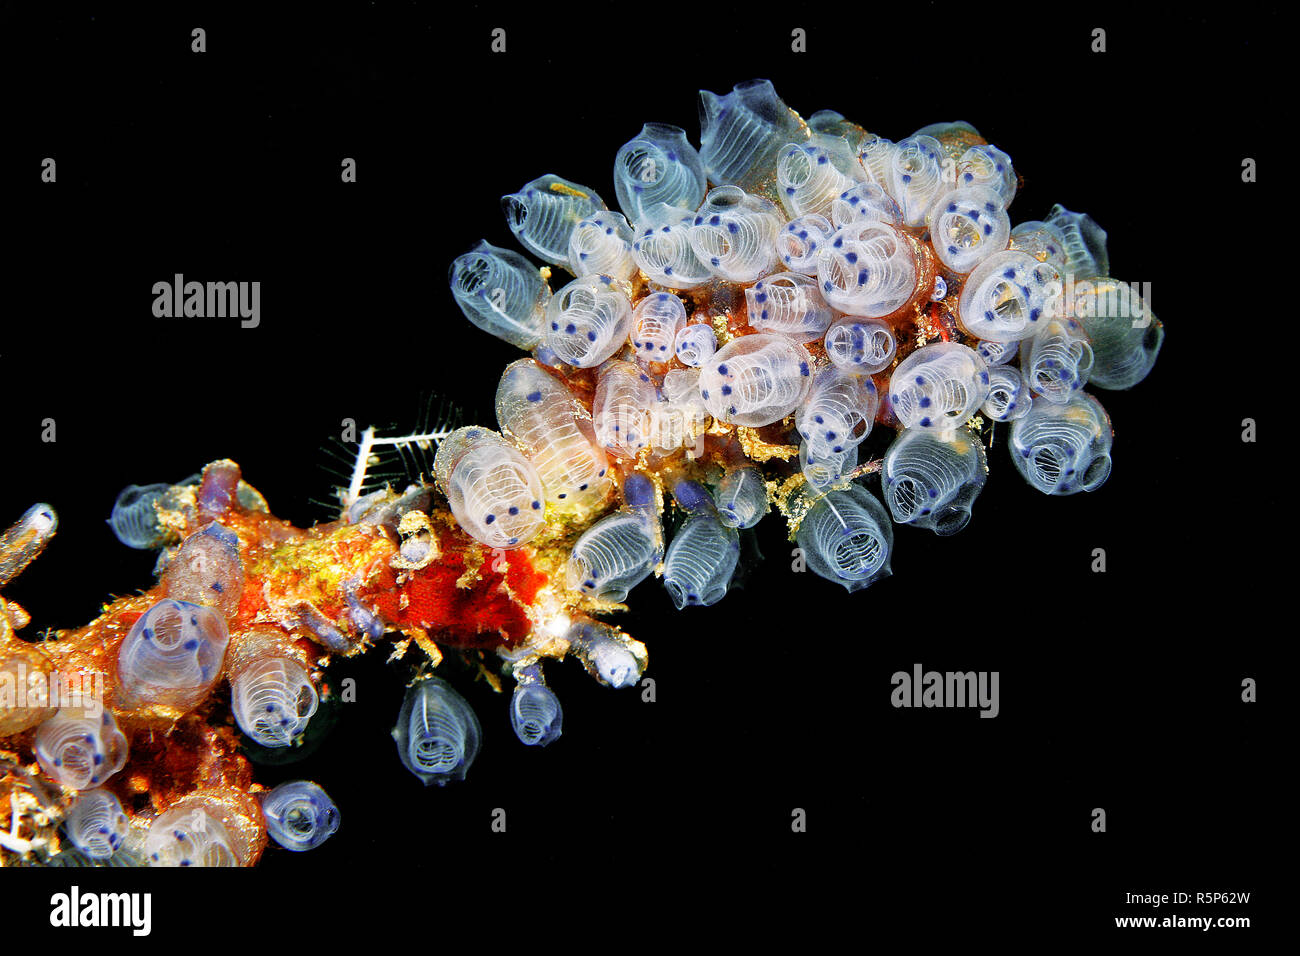 Colonia di tubolare di tunicati (Clavelina moluccensis), Molucche, mare Molucche, Indonesia, Asia Foto Stock